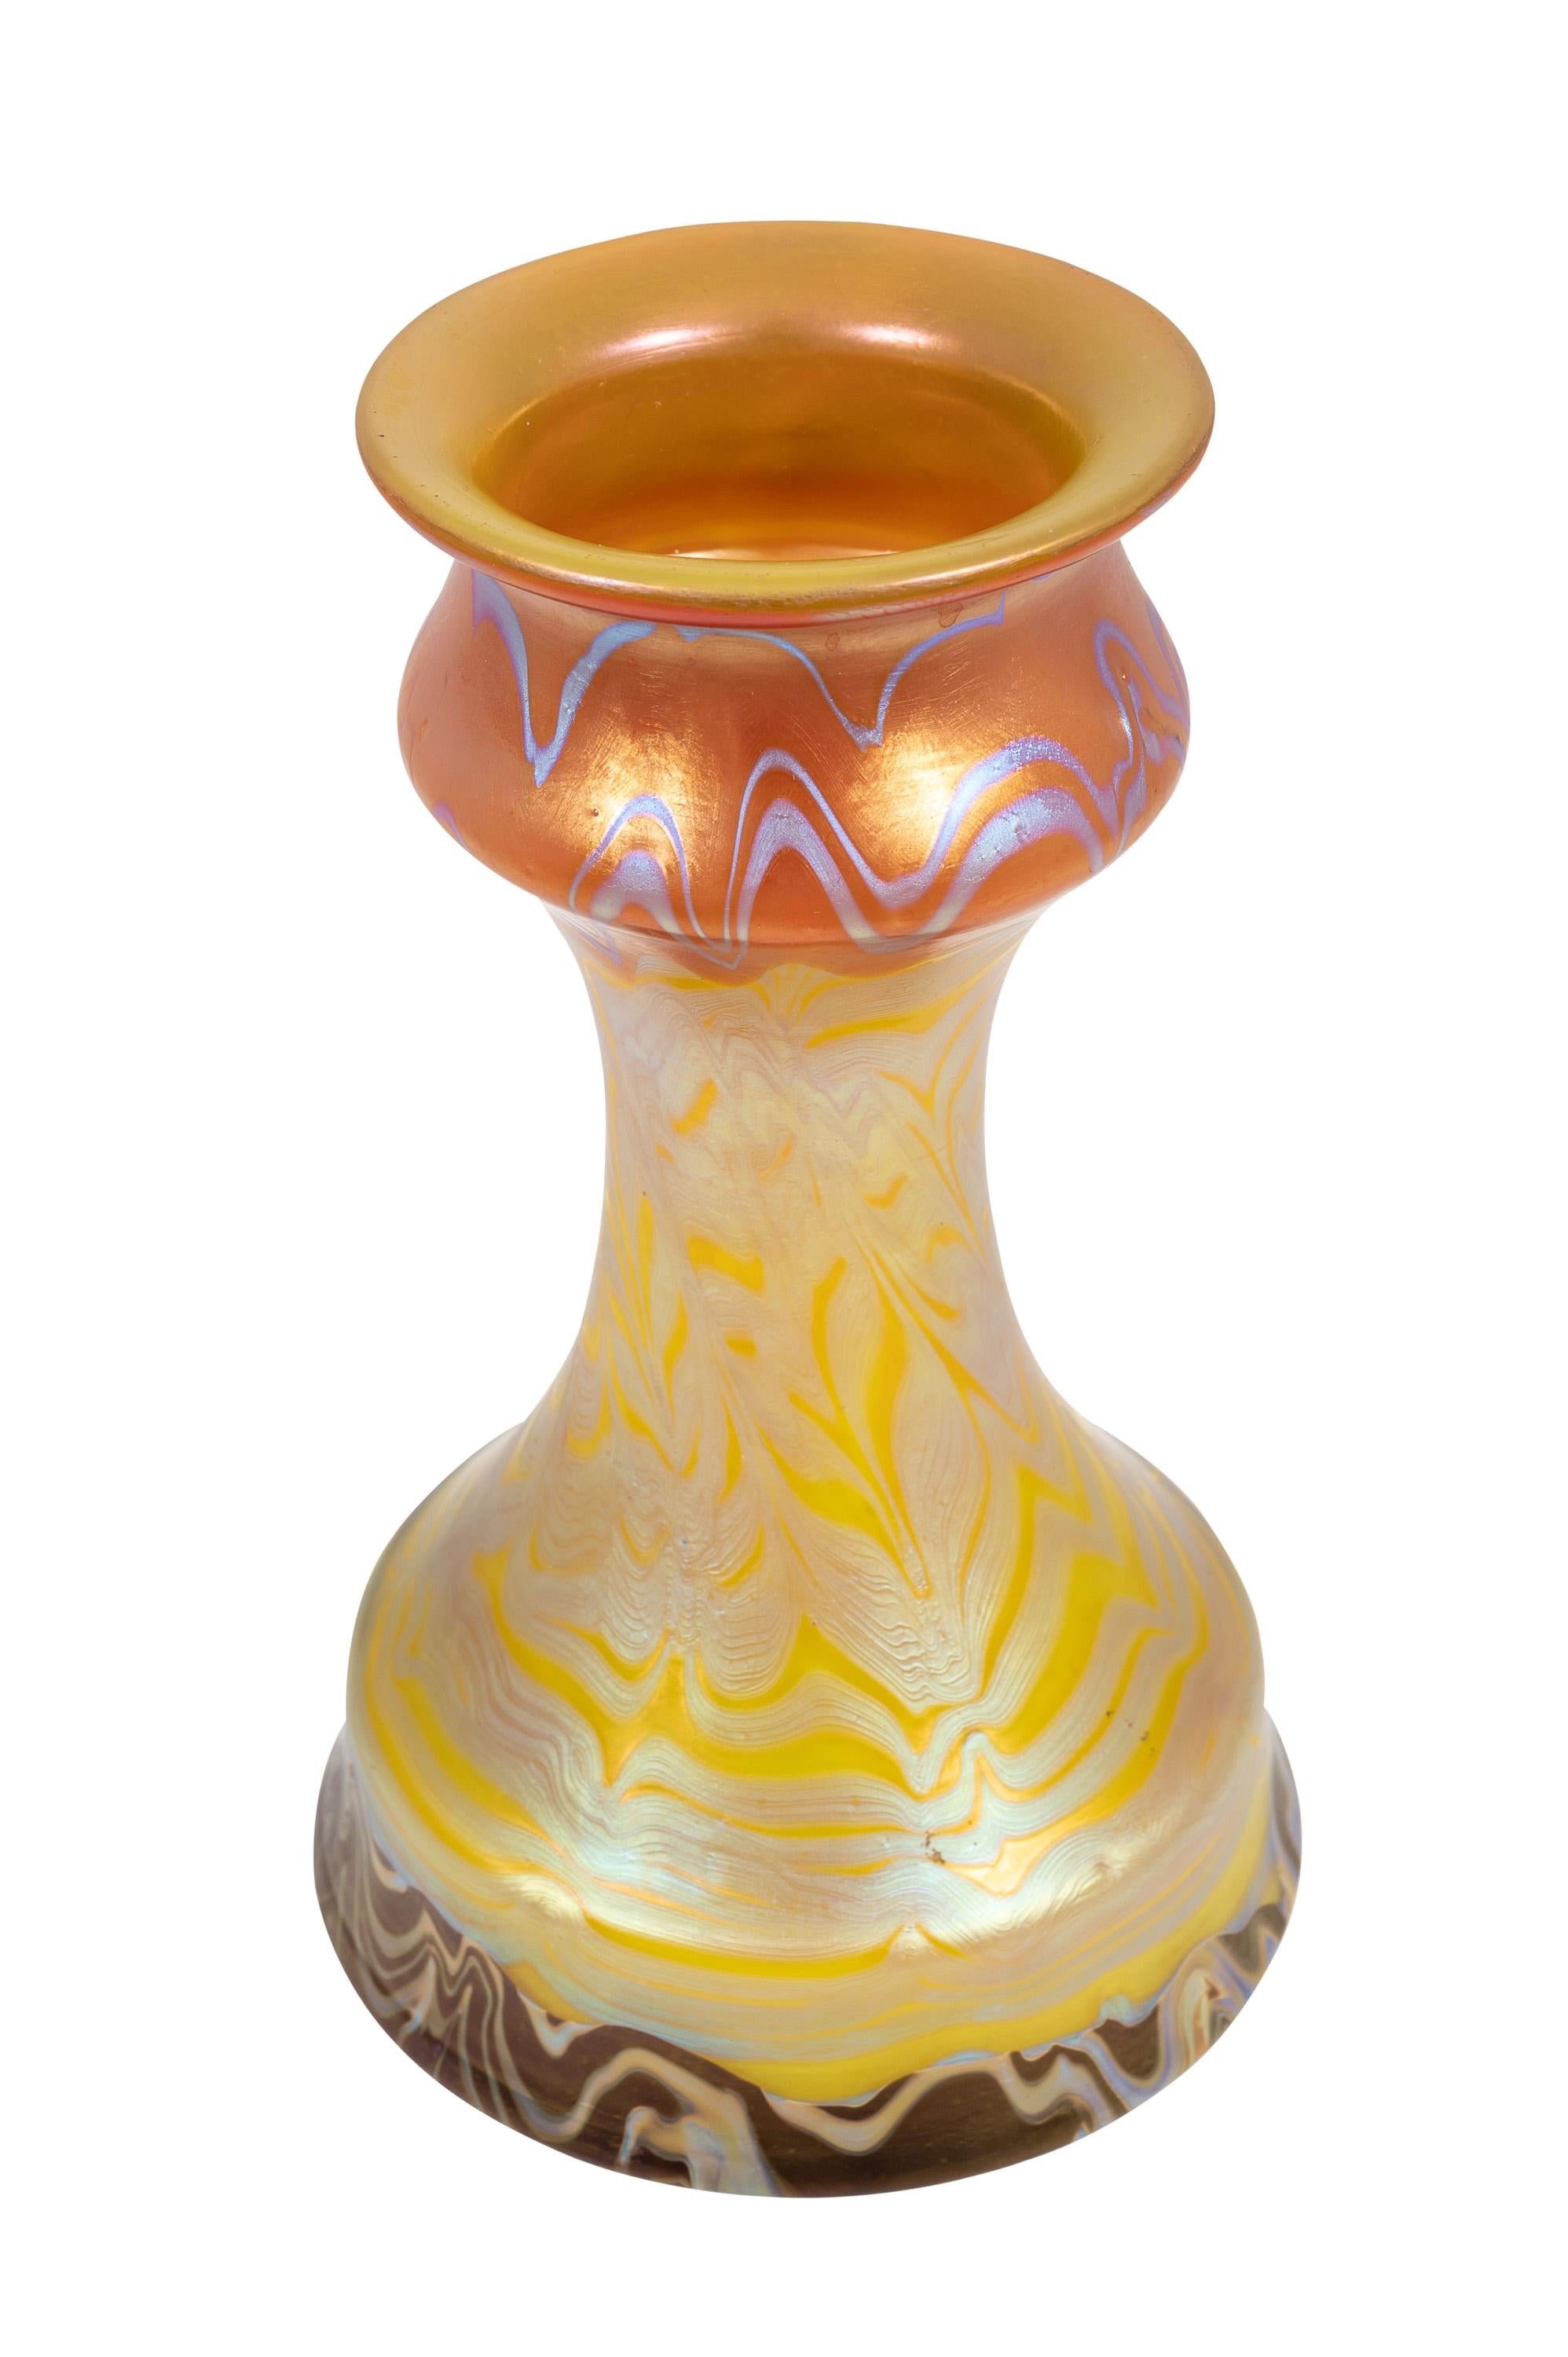 Jugendstil Bohemian Glass Vase Loetz PG 358 circa 1900 Art Nouveau For Sale